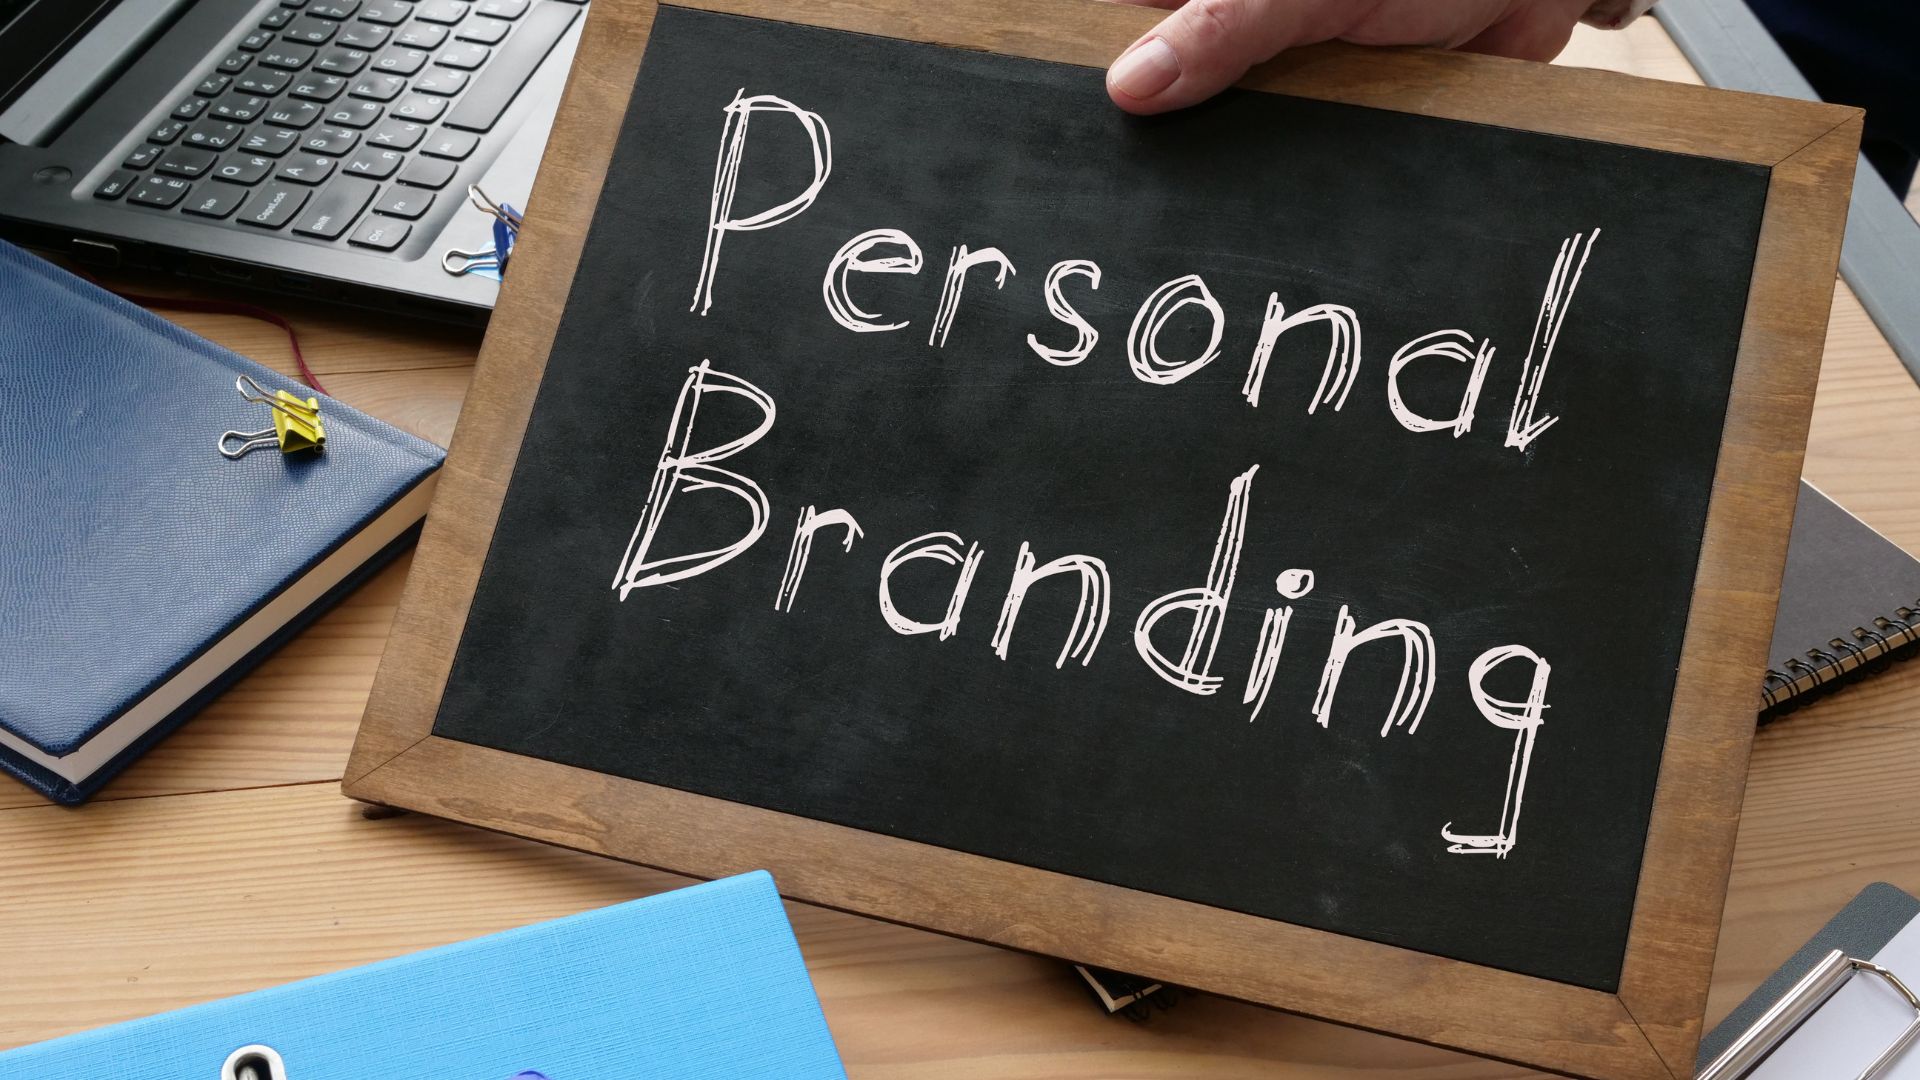 Pesonal branding, czyli marka osobista dla freelancerów i specjalistów